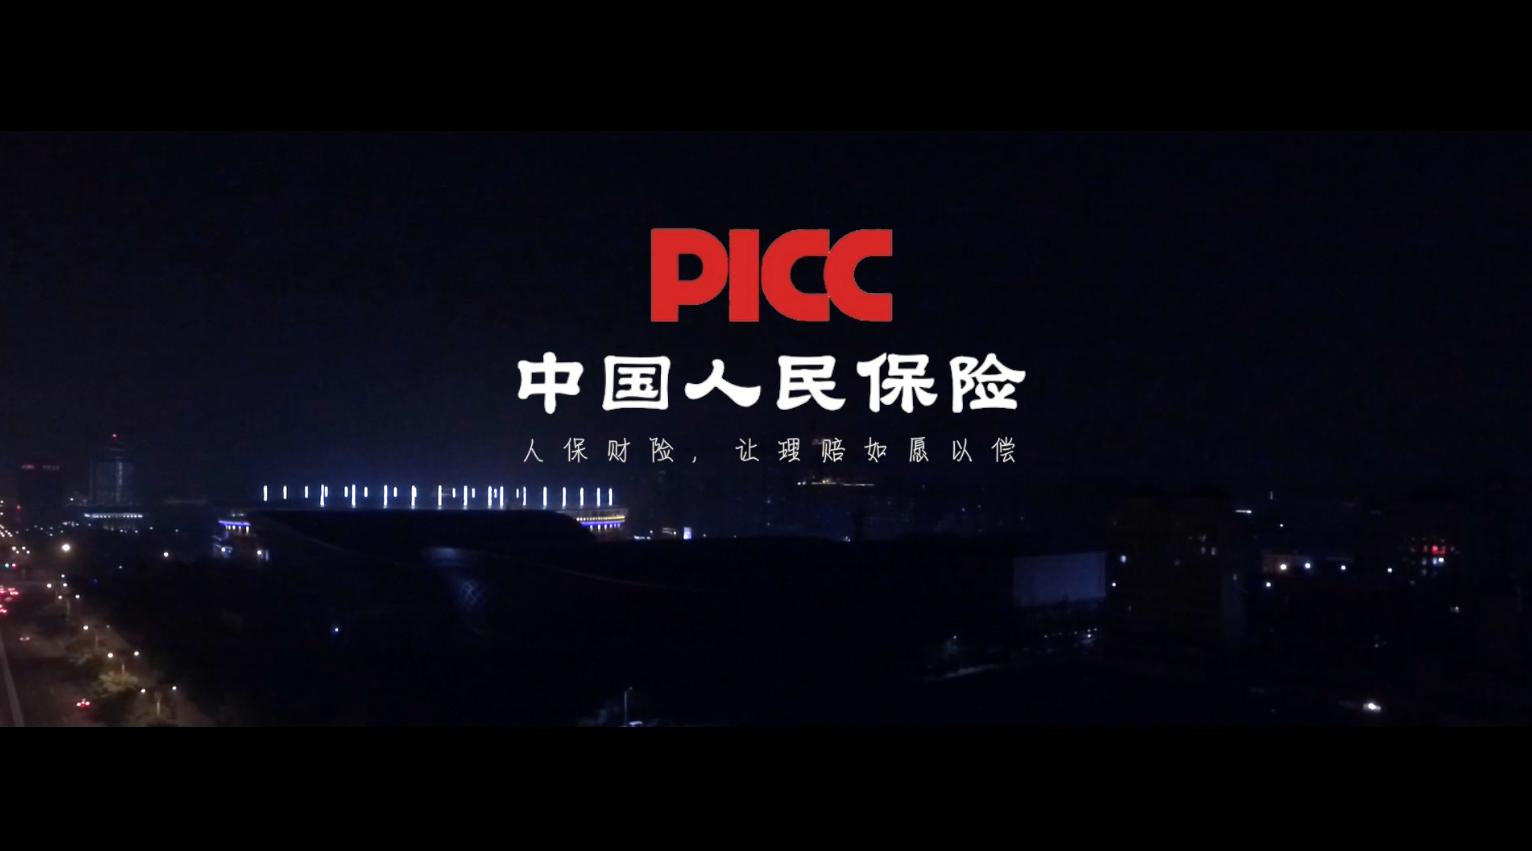 PICC中国人保财险理赔微电影《如愿以偿》